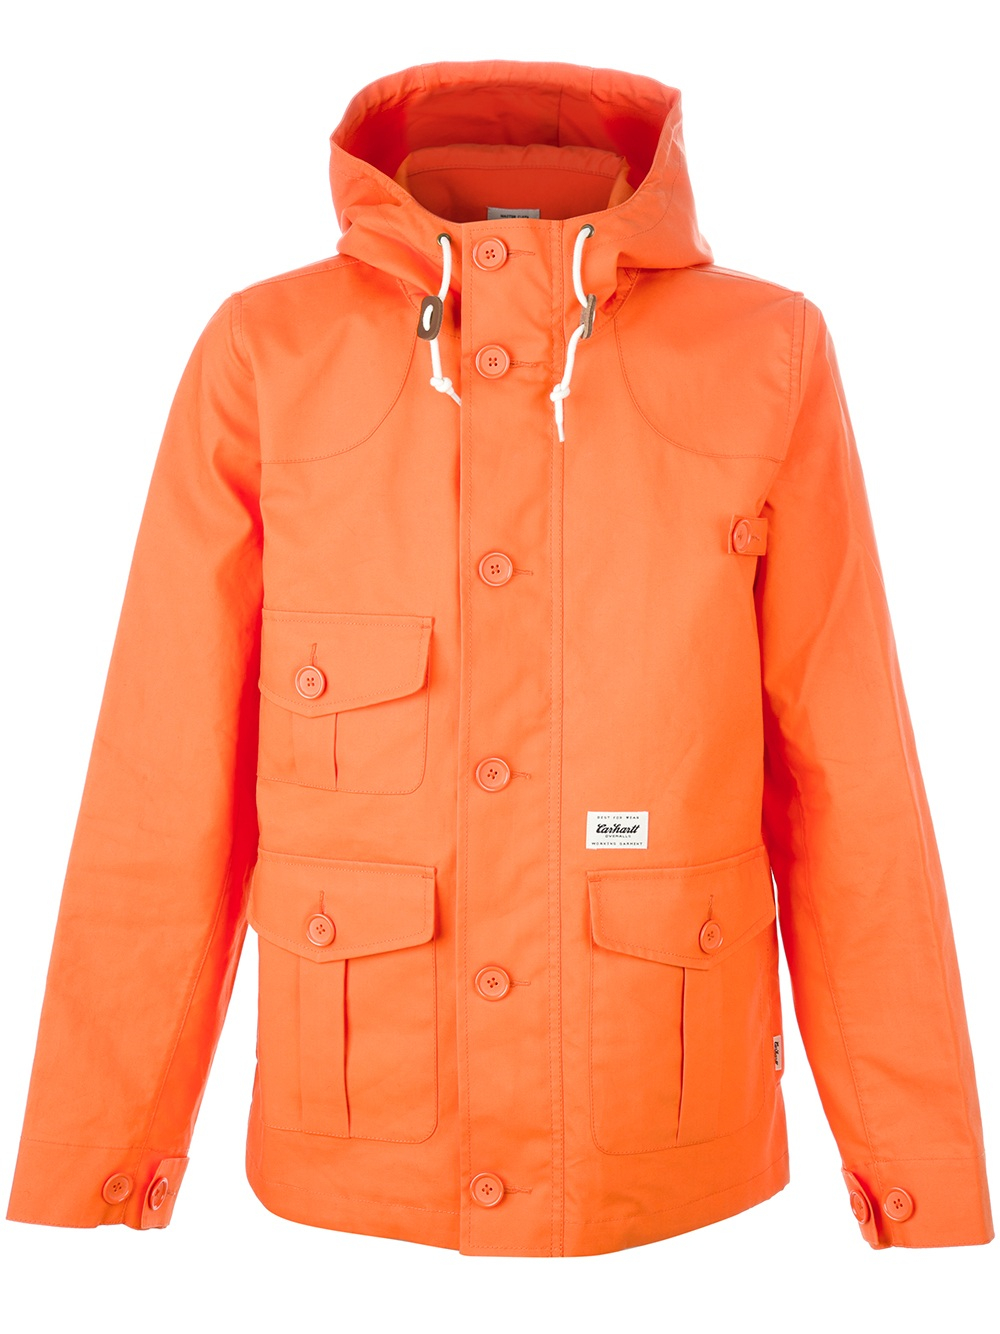 Carhartt Blast Orange Duffle Coat for Men - Lyst